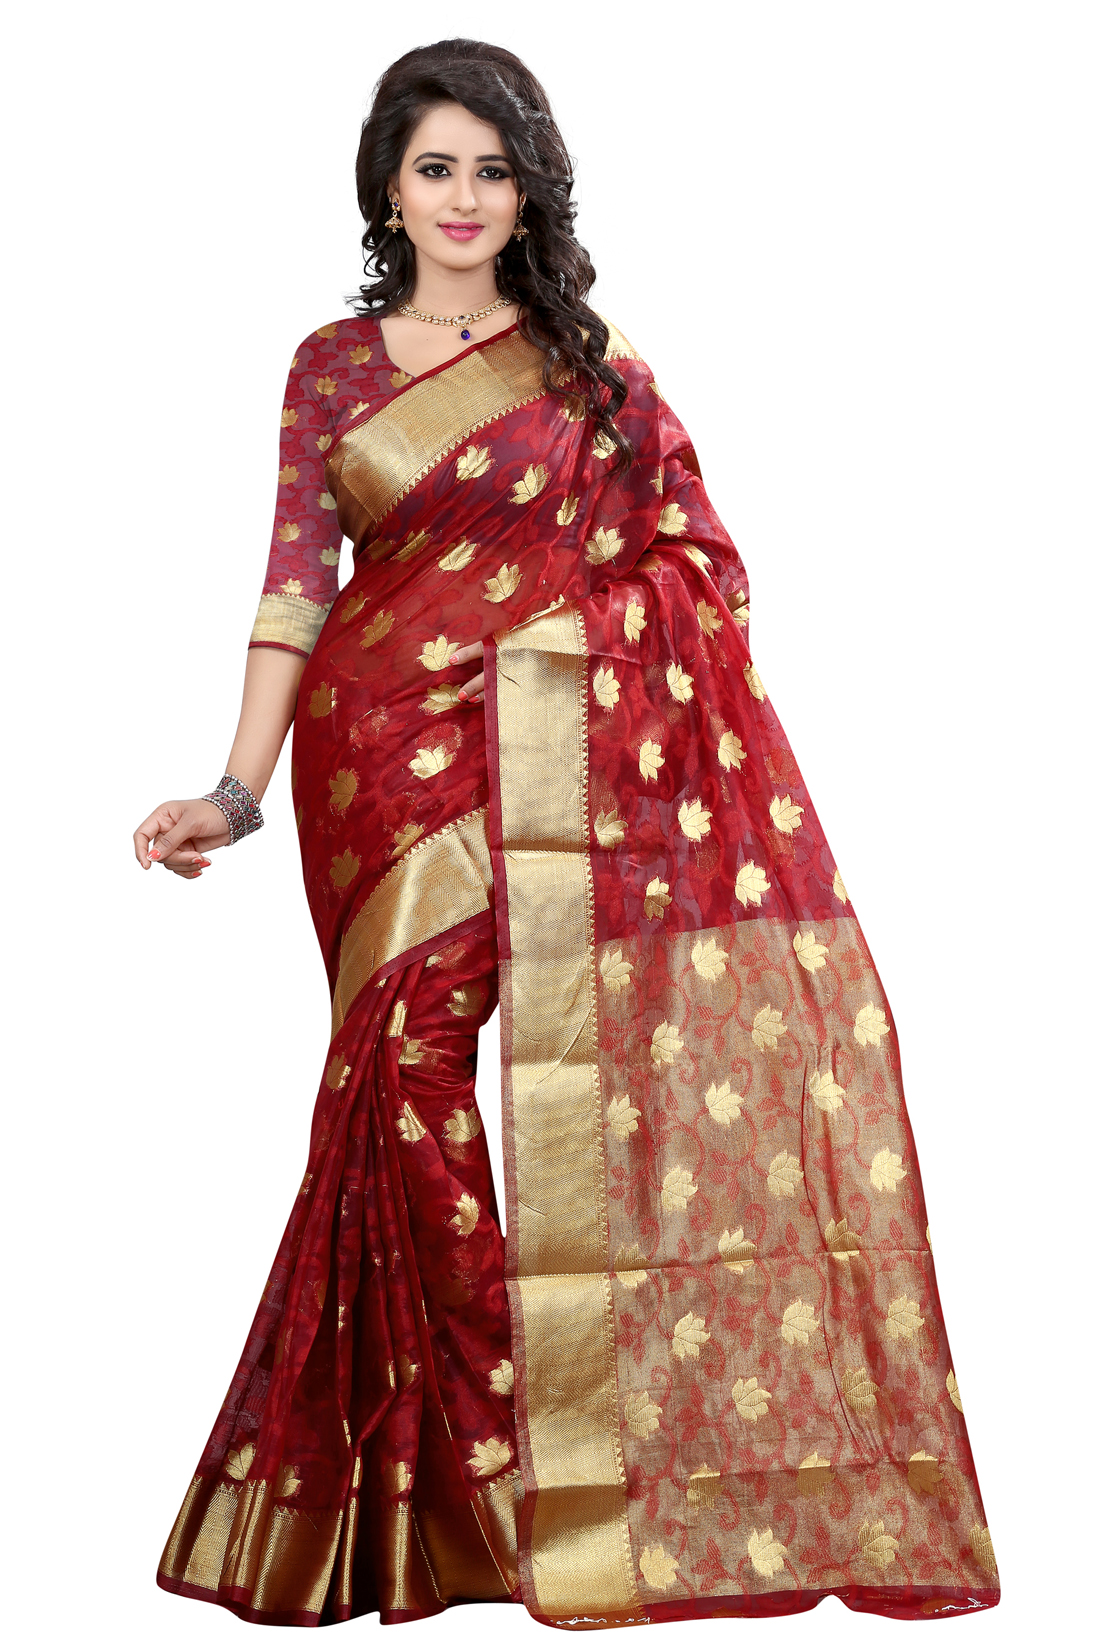 banarasi-sarees-designs-11